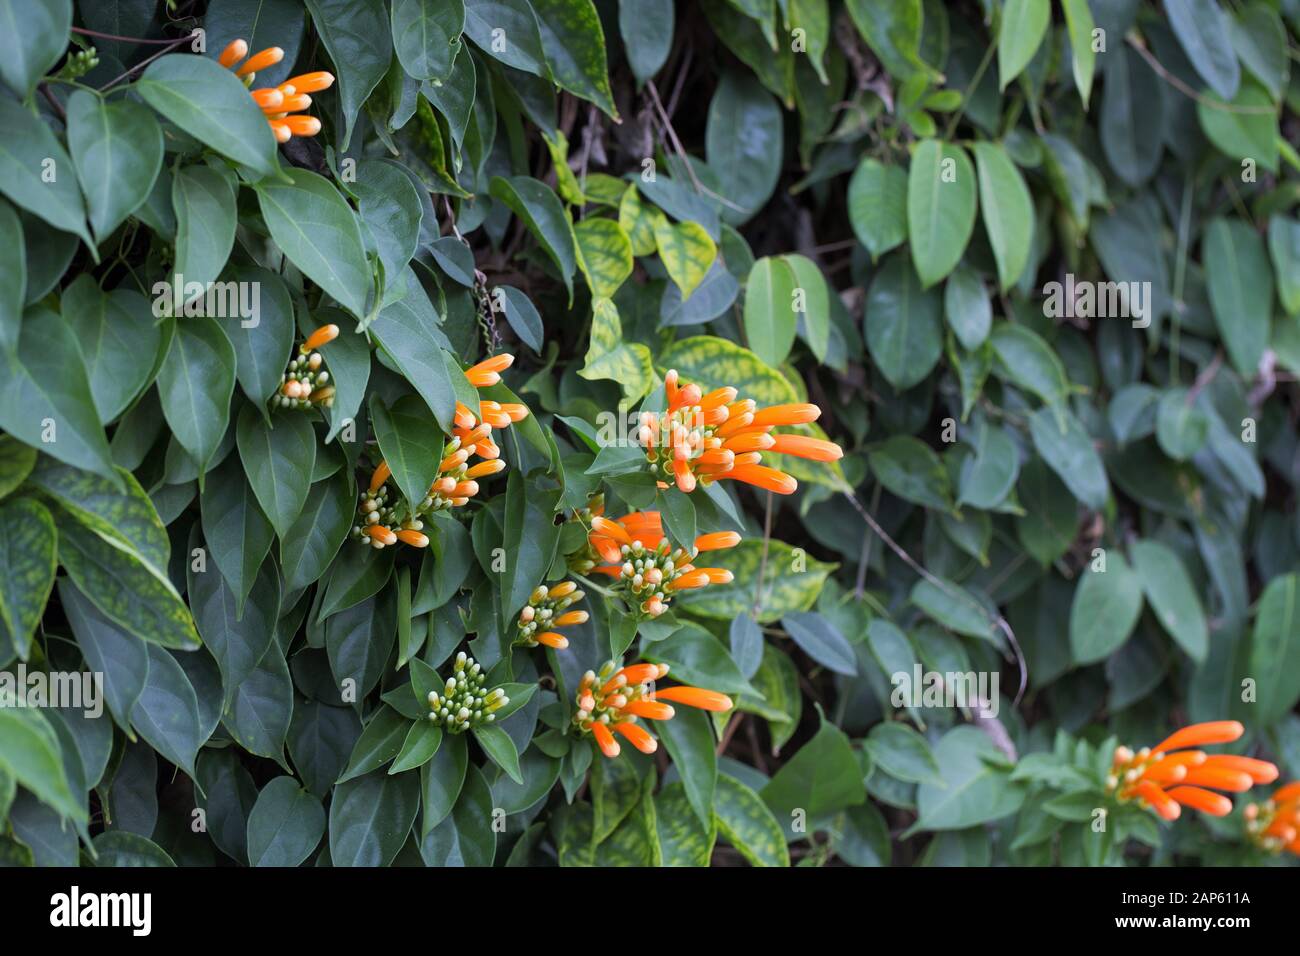 Pyrostegia venusta flowers. Stock Photo